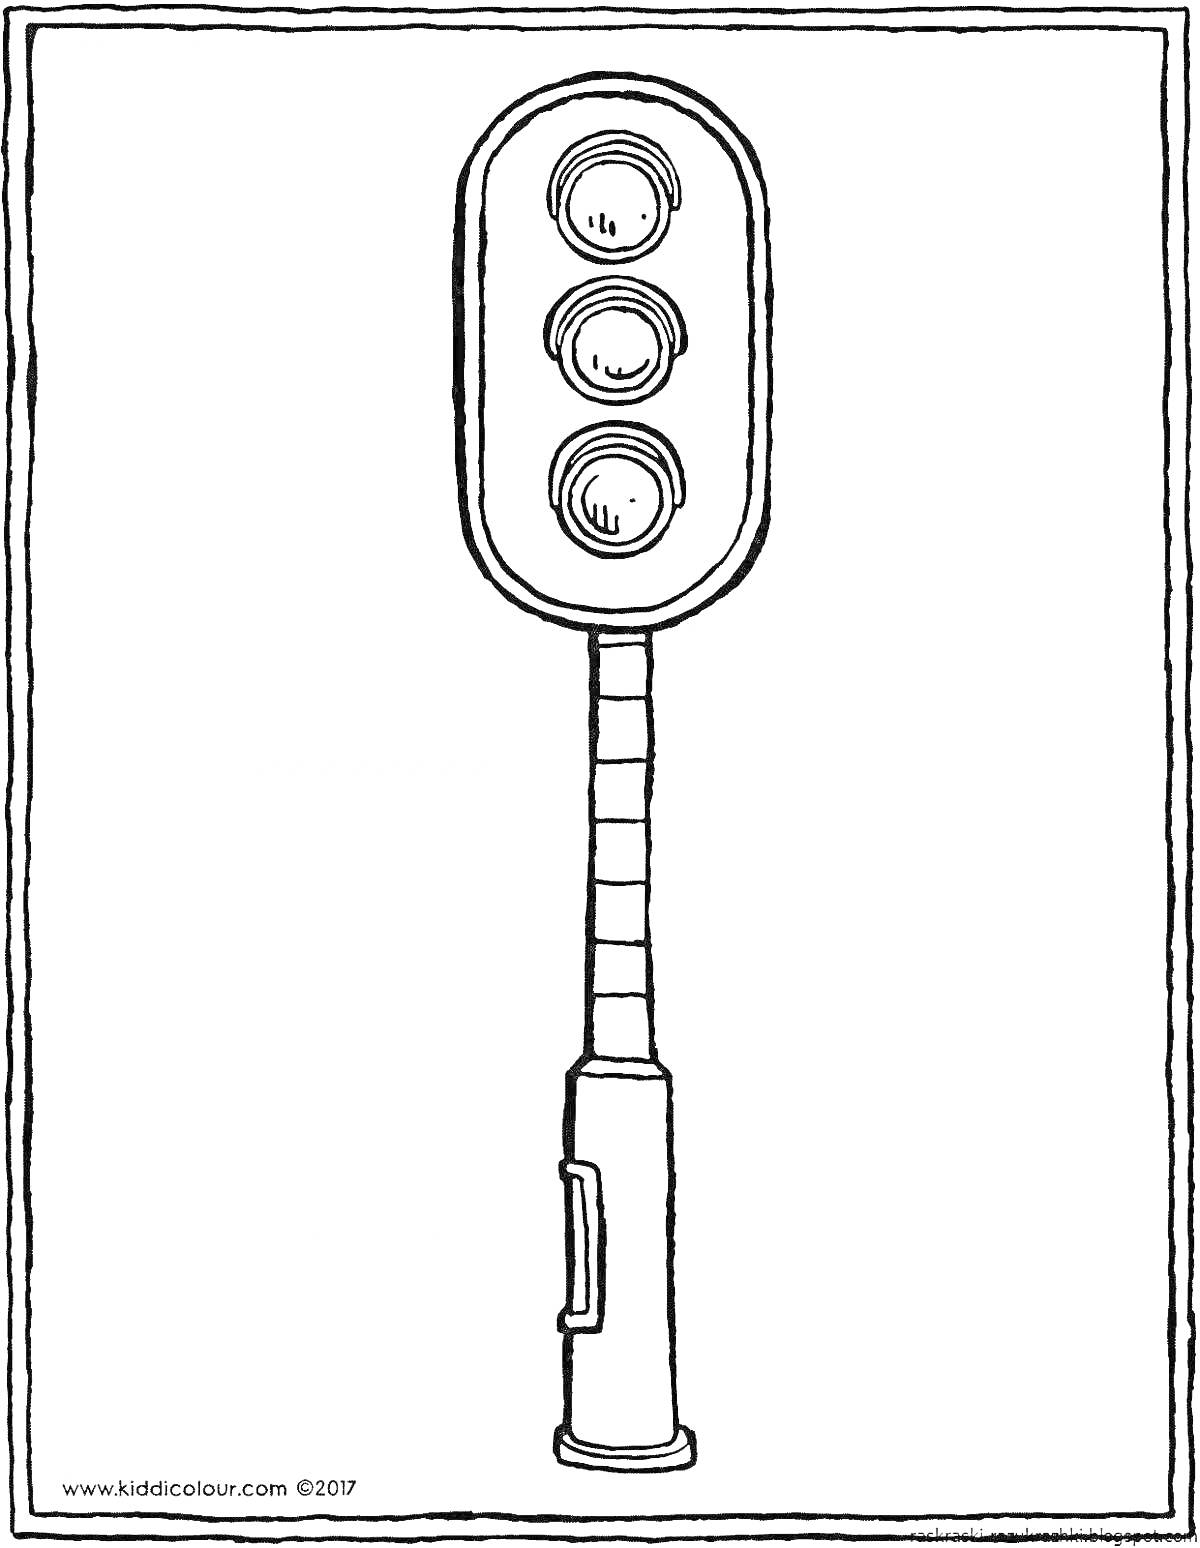 Раскраска Сигнальный светофор с тремя круглыми лампами и полосатым столбом